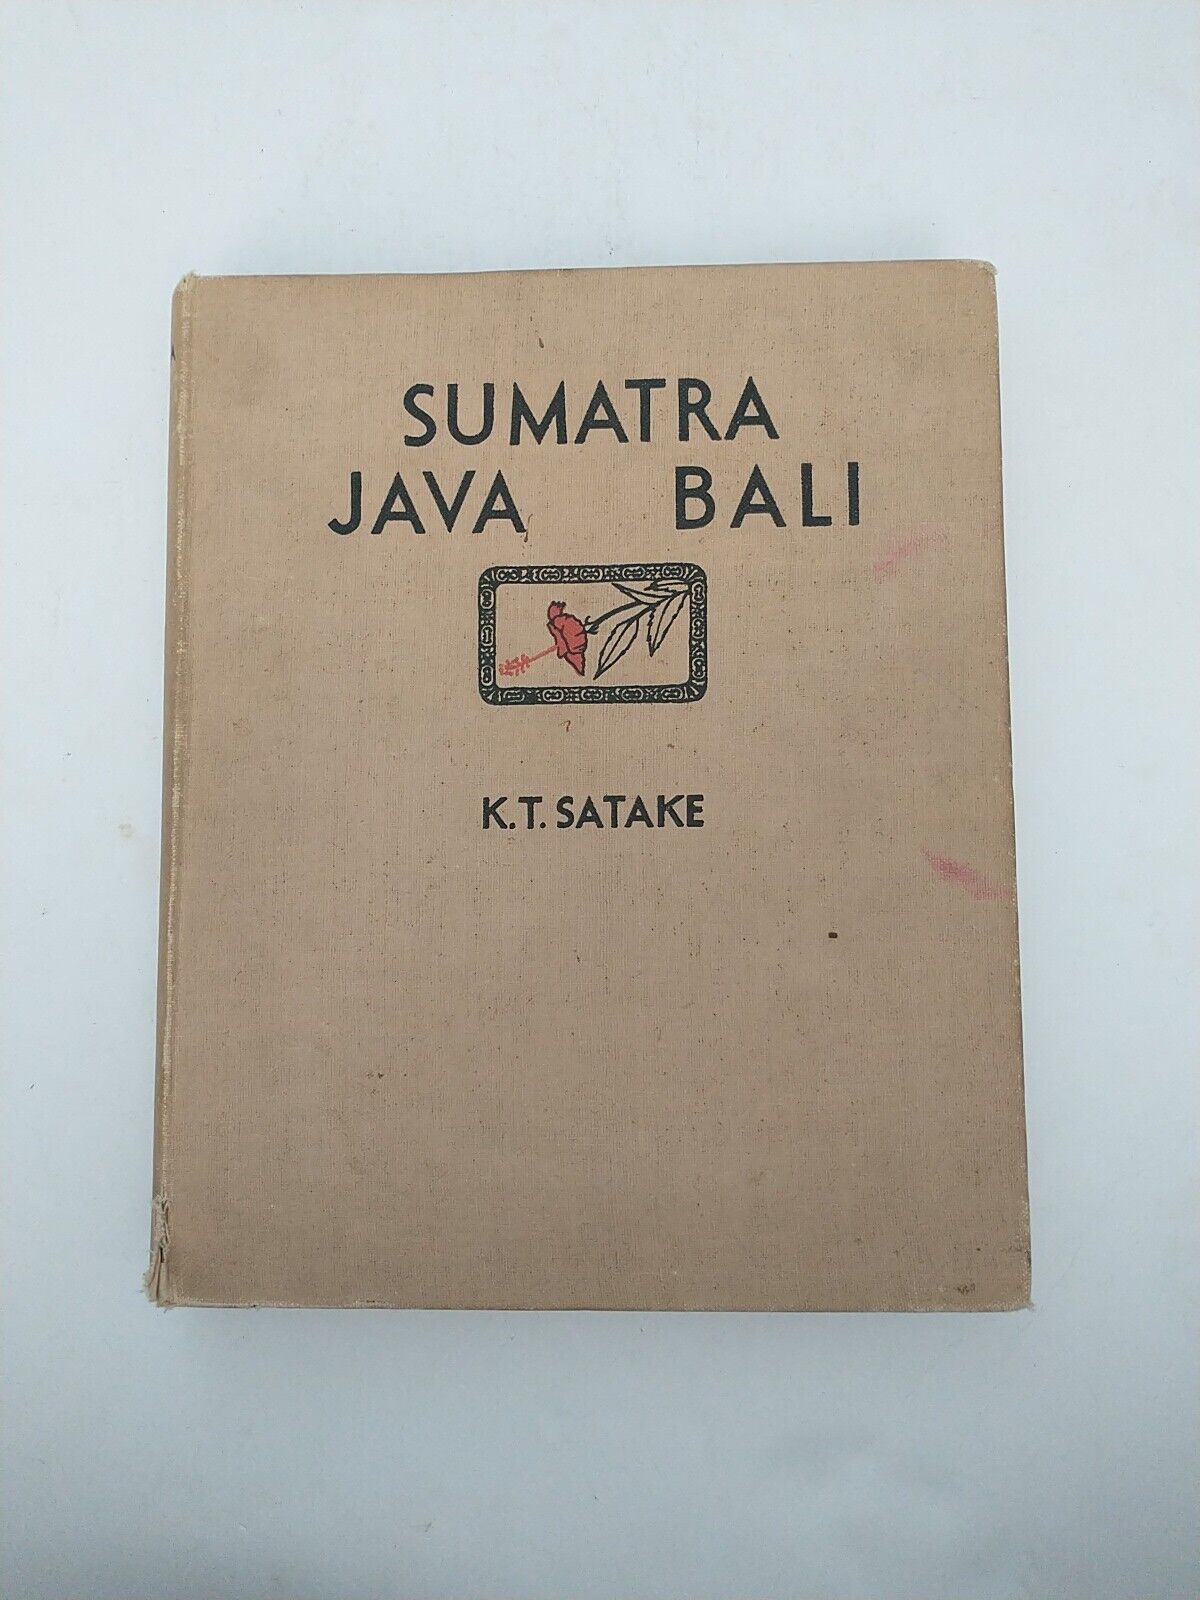 SUMATRA JAVA BALI K.T. SATAKE 1935